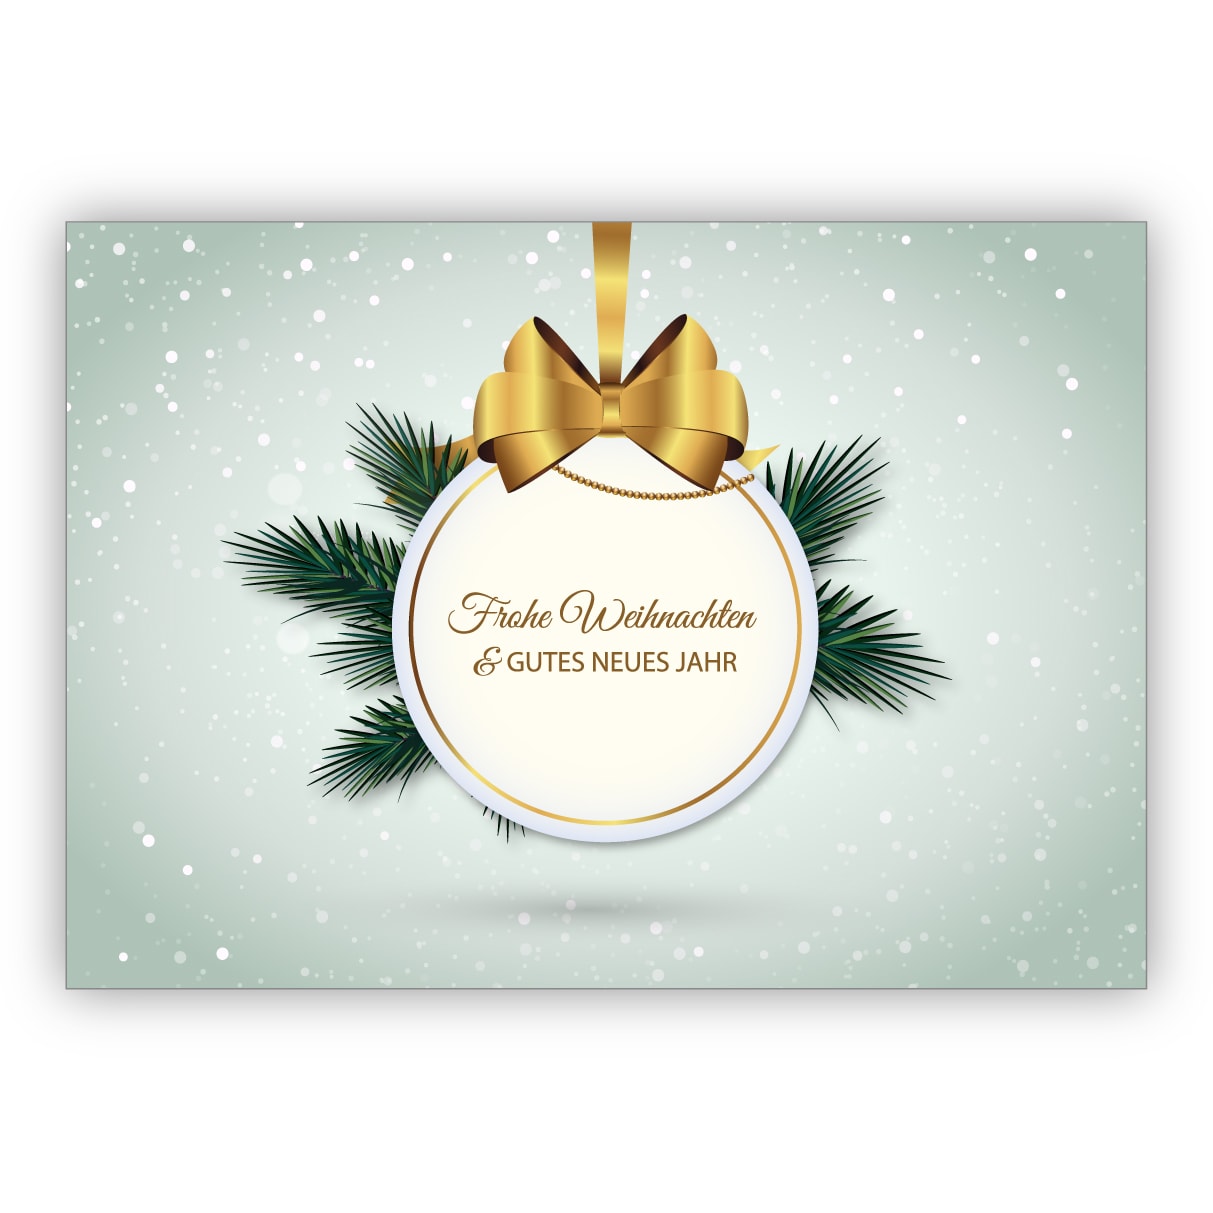 Elegante Weihnachtskarte mit Weihnachtskugel und Tannengrün: Frohe Weihnachten & gutes neues Jahr